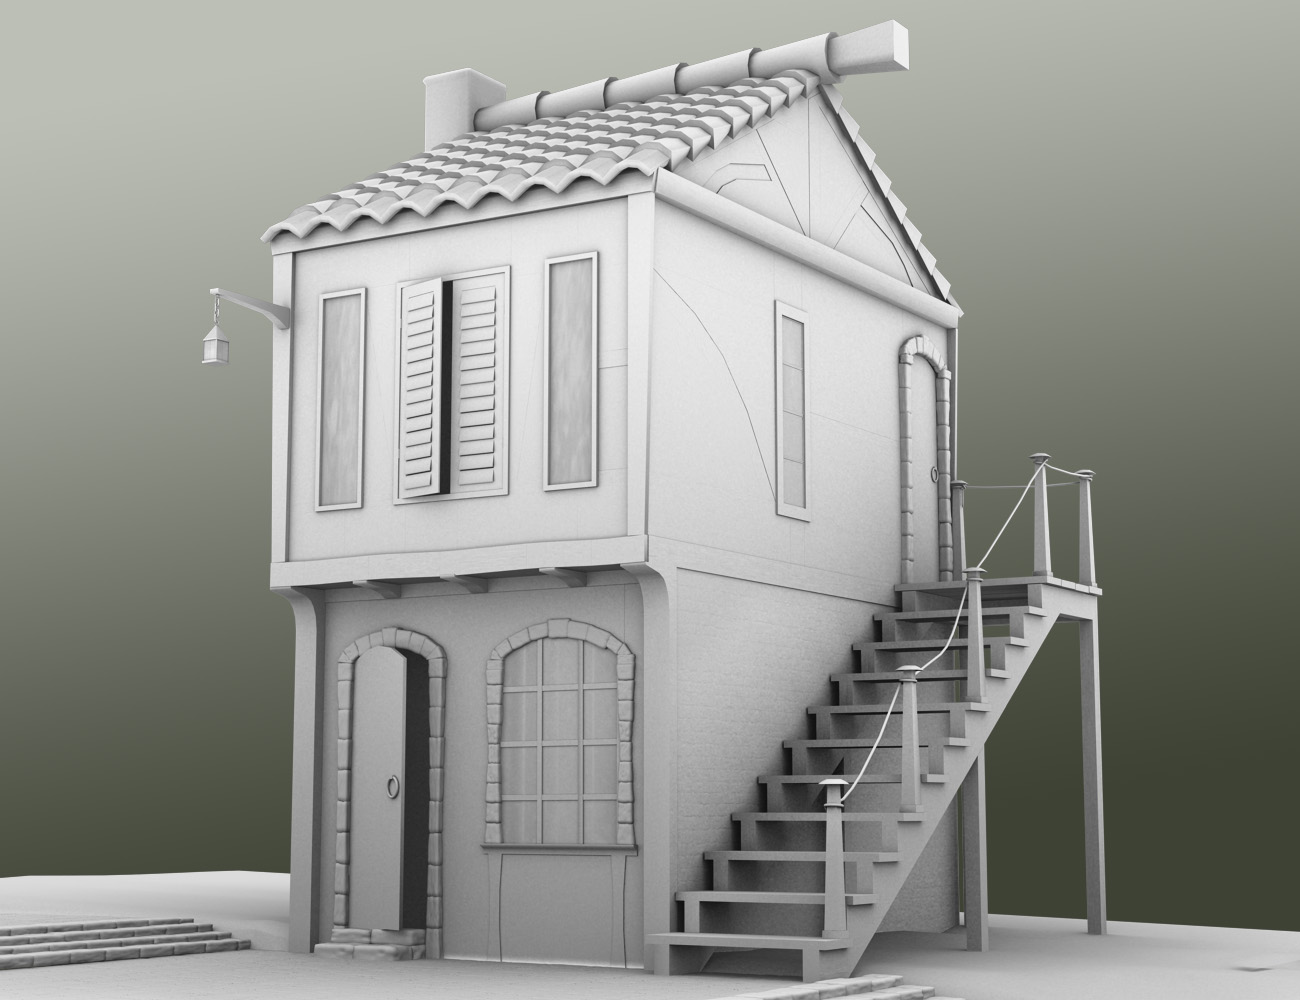 Gatwyck Houses by: Muze, 3D Models by Daz 3D